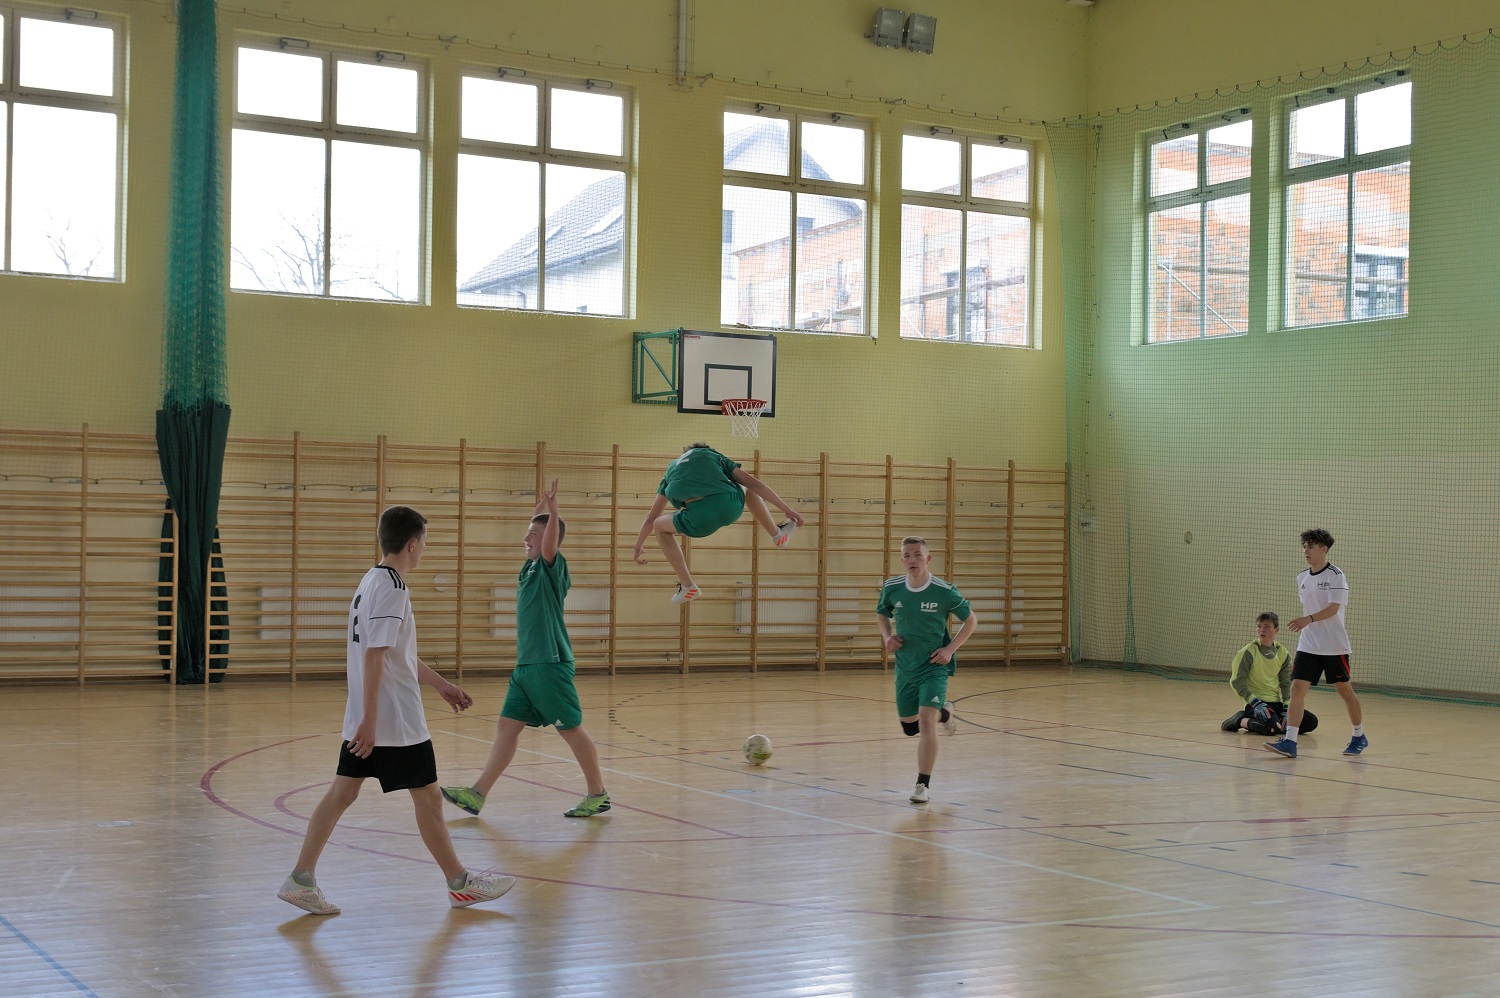 Hufiec Pracy z Trzebnicy zwycięzcą w Wojewódzkich Mistrzostwach OHP Halowej Piłki Nożnej Chłopców w Trzebnicy